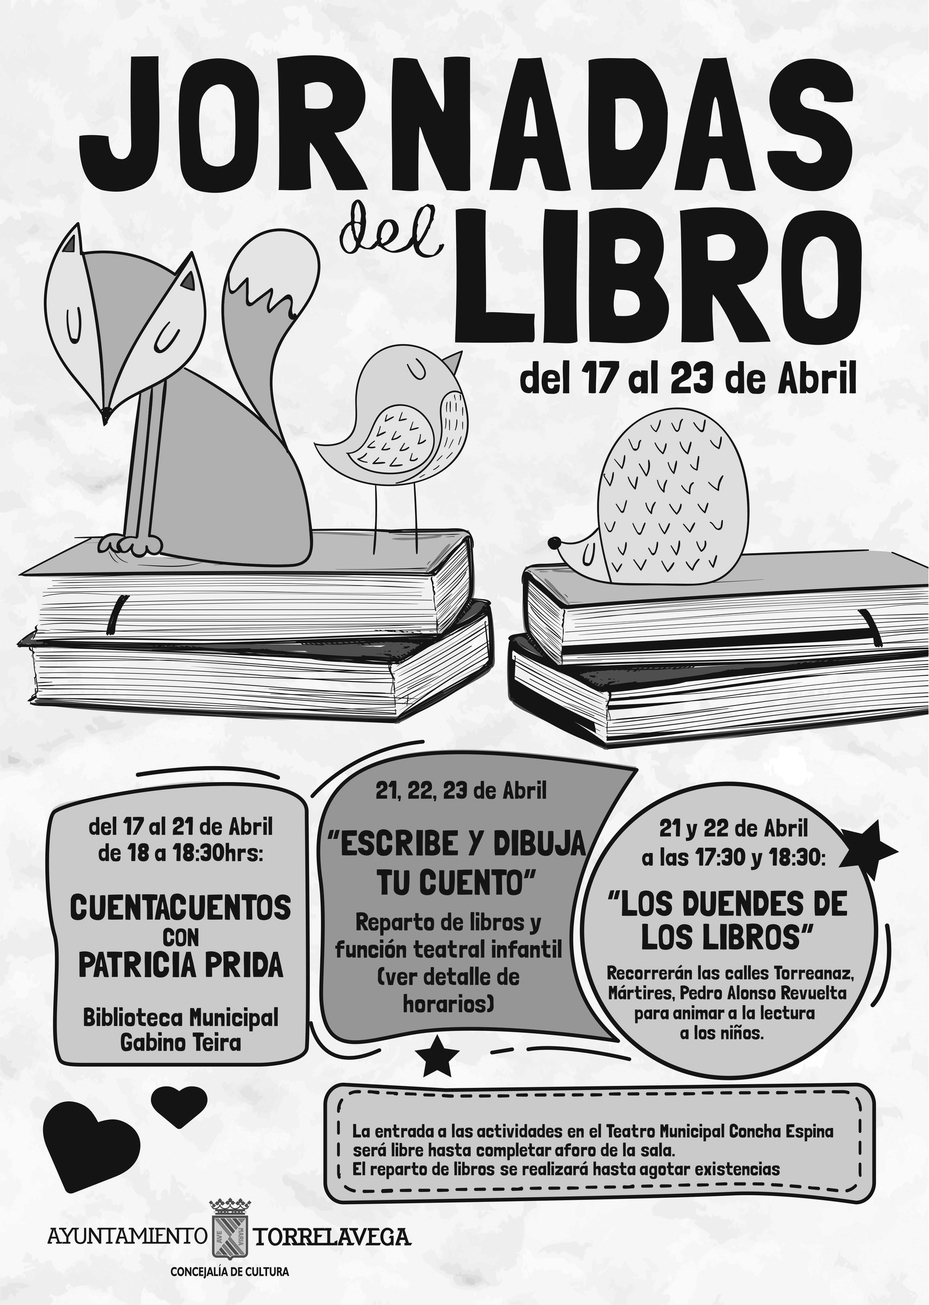 Torrelavega celebra desde hoy el Día del Libro